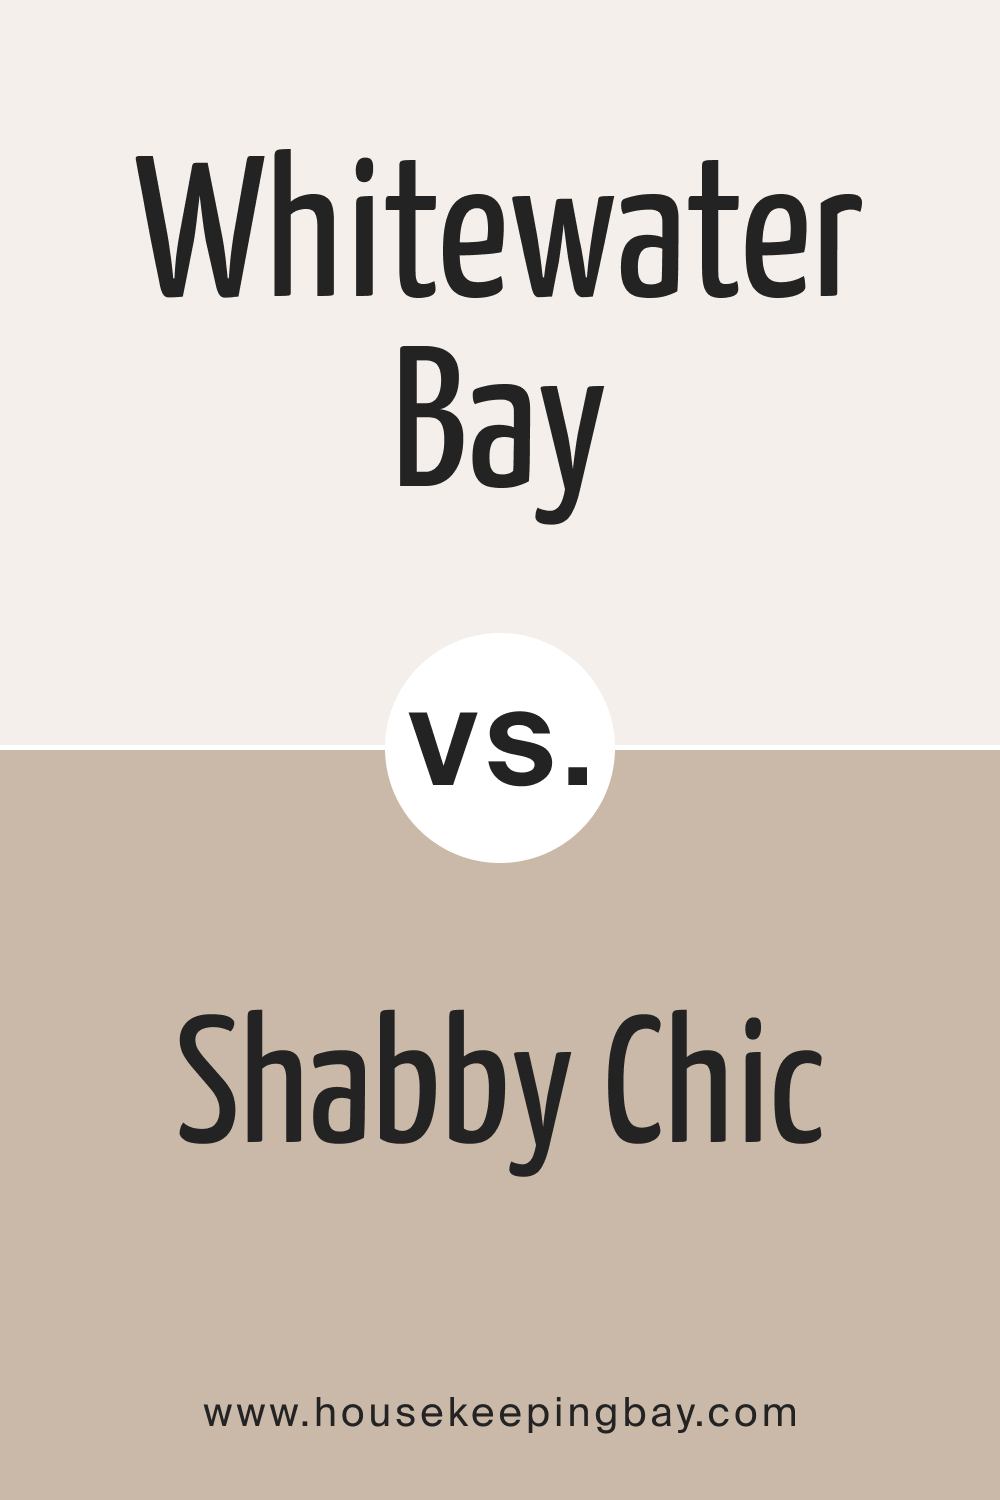 Whitewater Bay OC 70 vs BM 1018 Shabby Chic